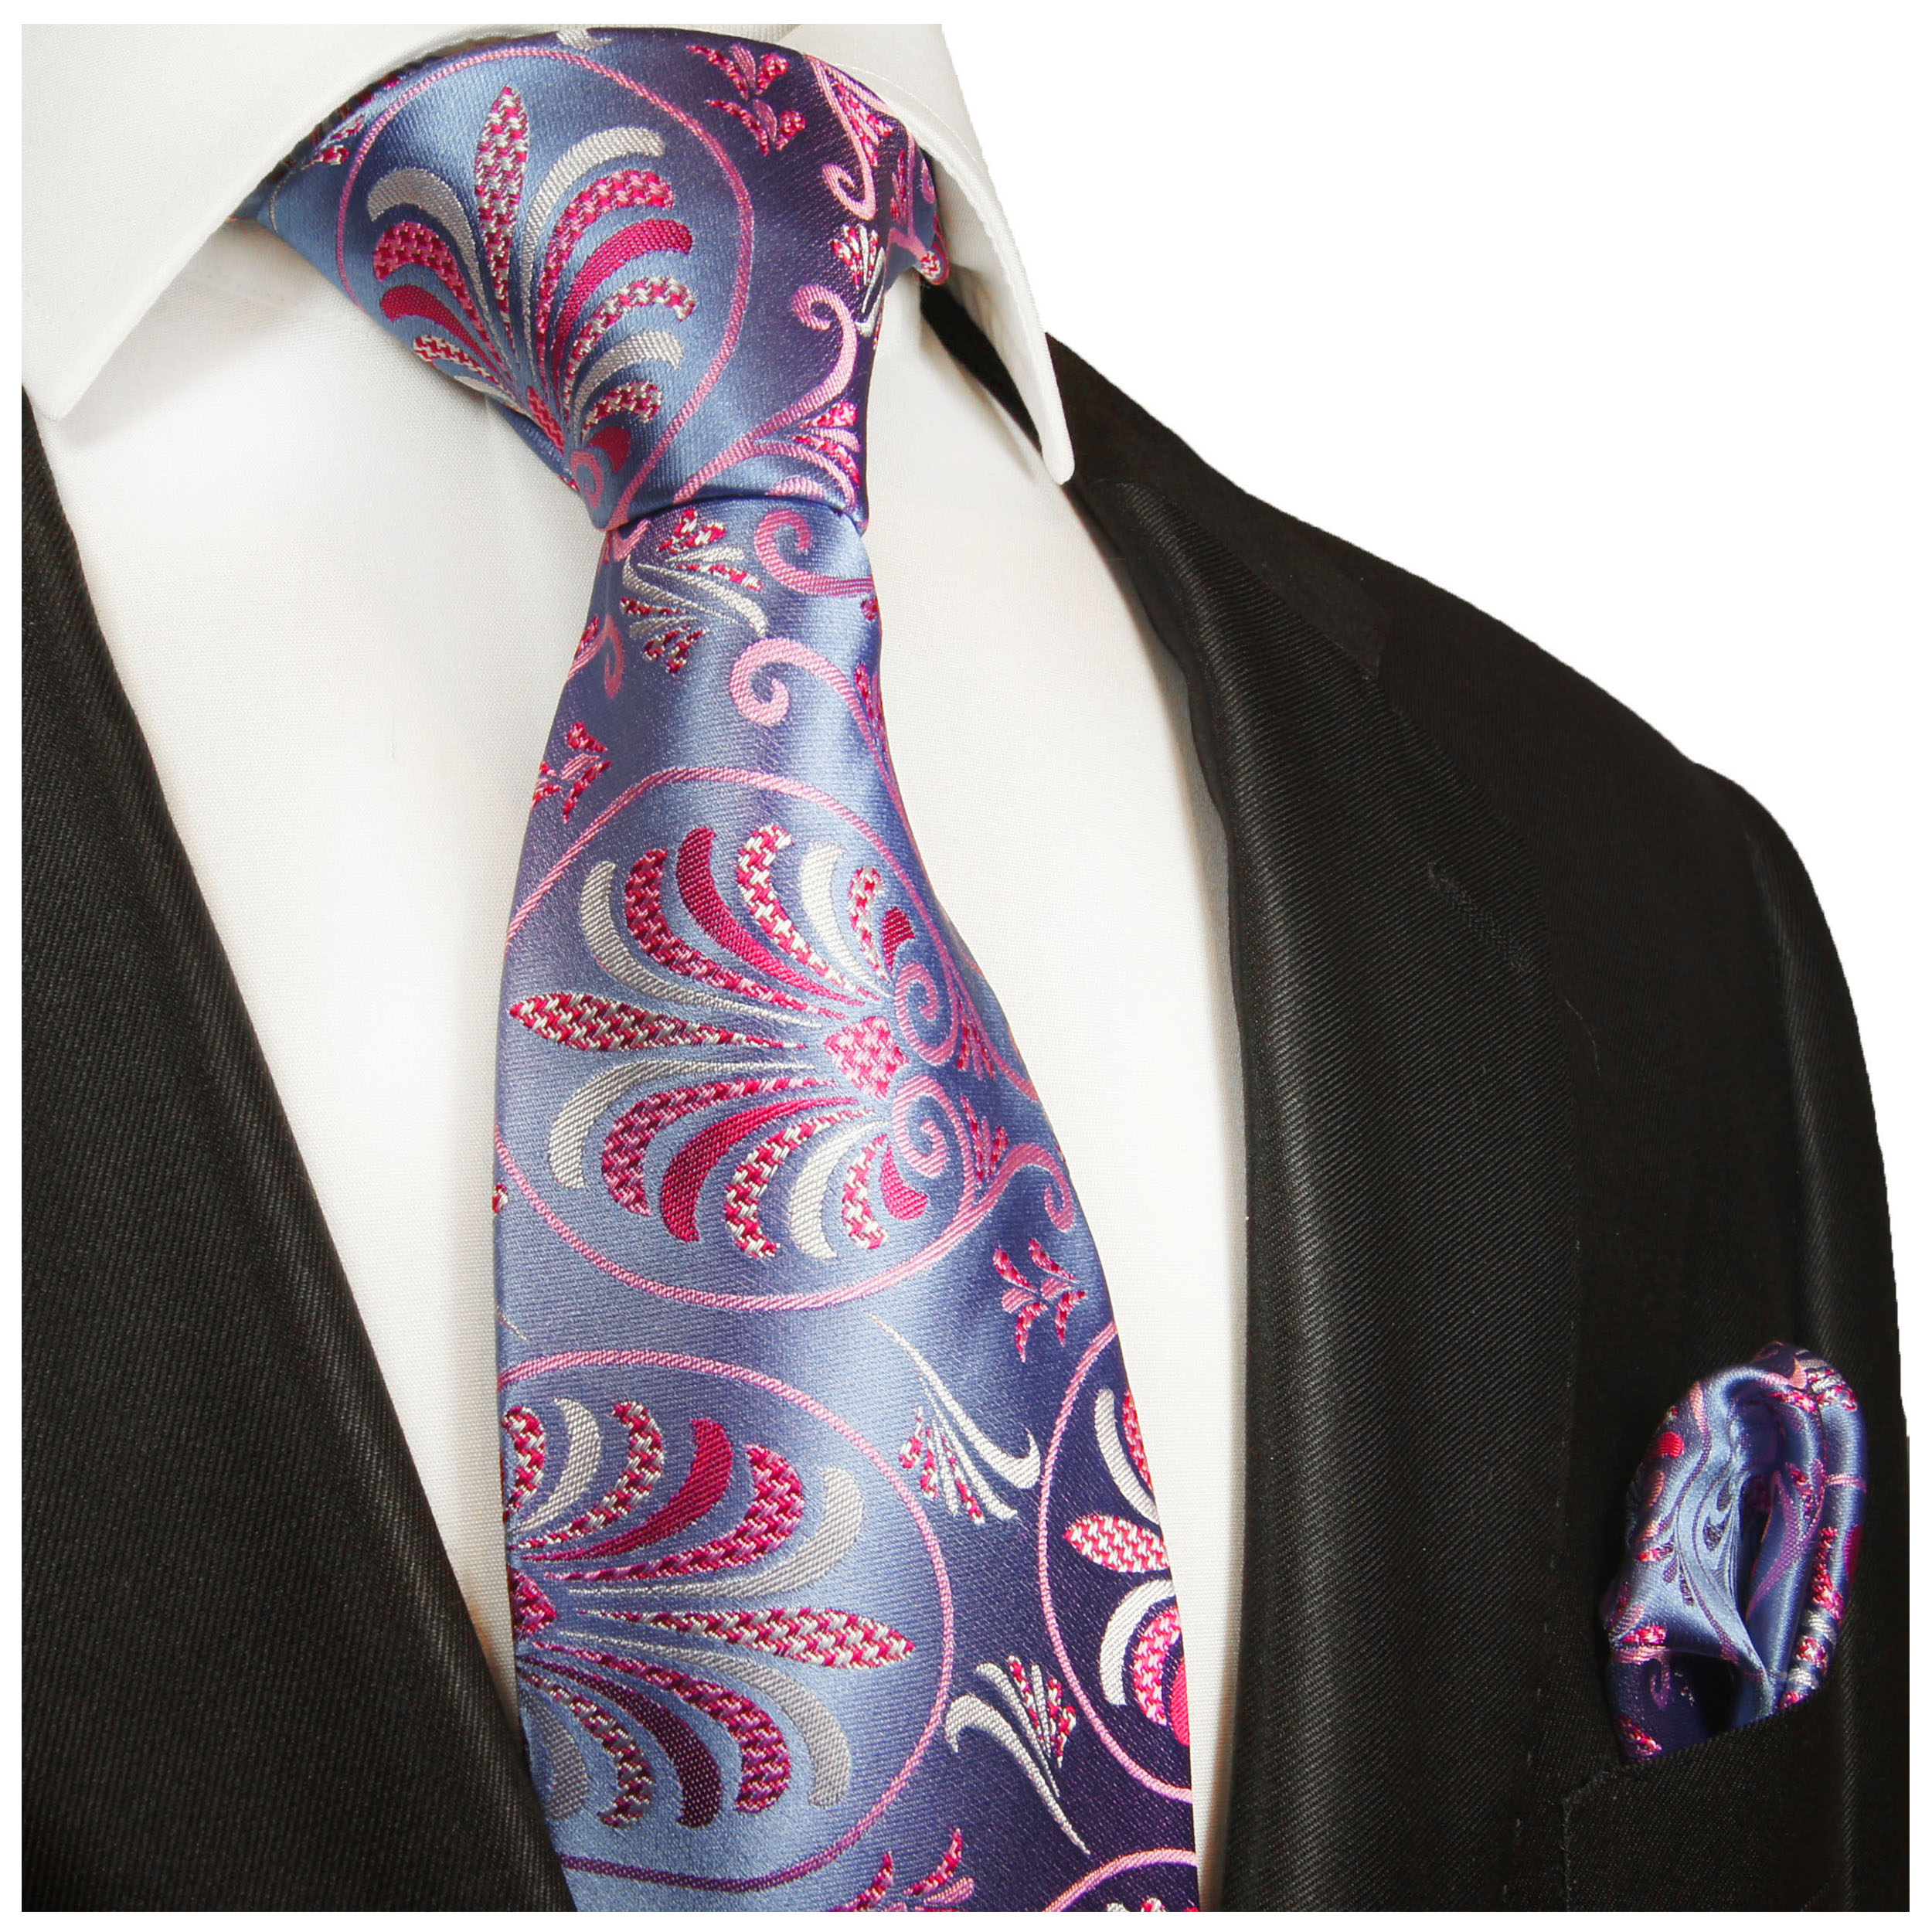 Seidenkrawatte gestreift beere blau 100% Seide Krawatte von Monti Mode elegant 